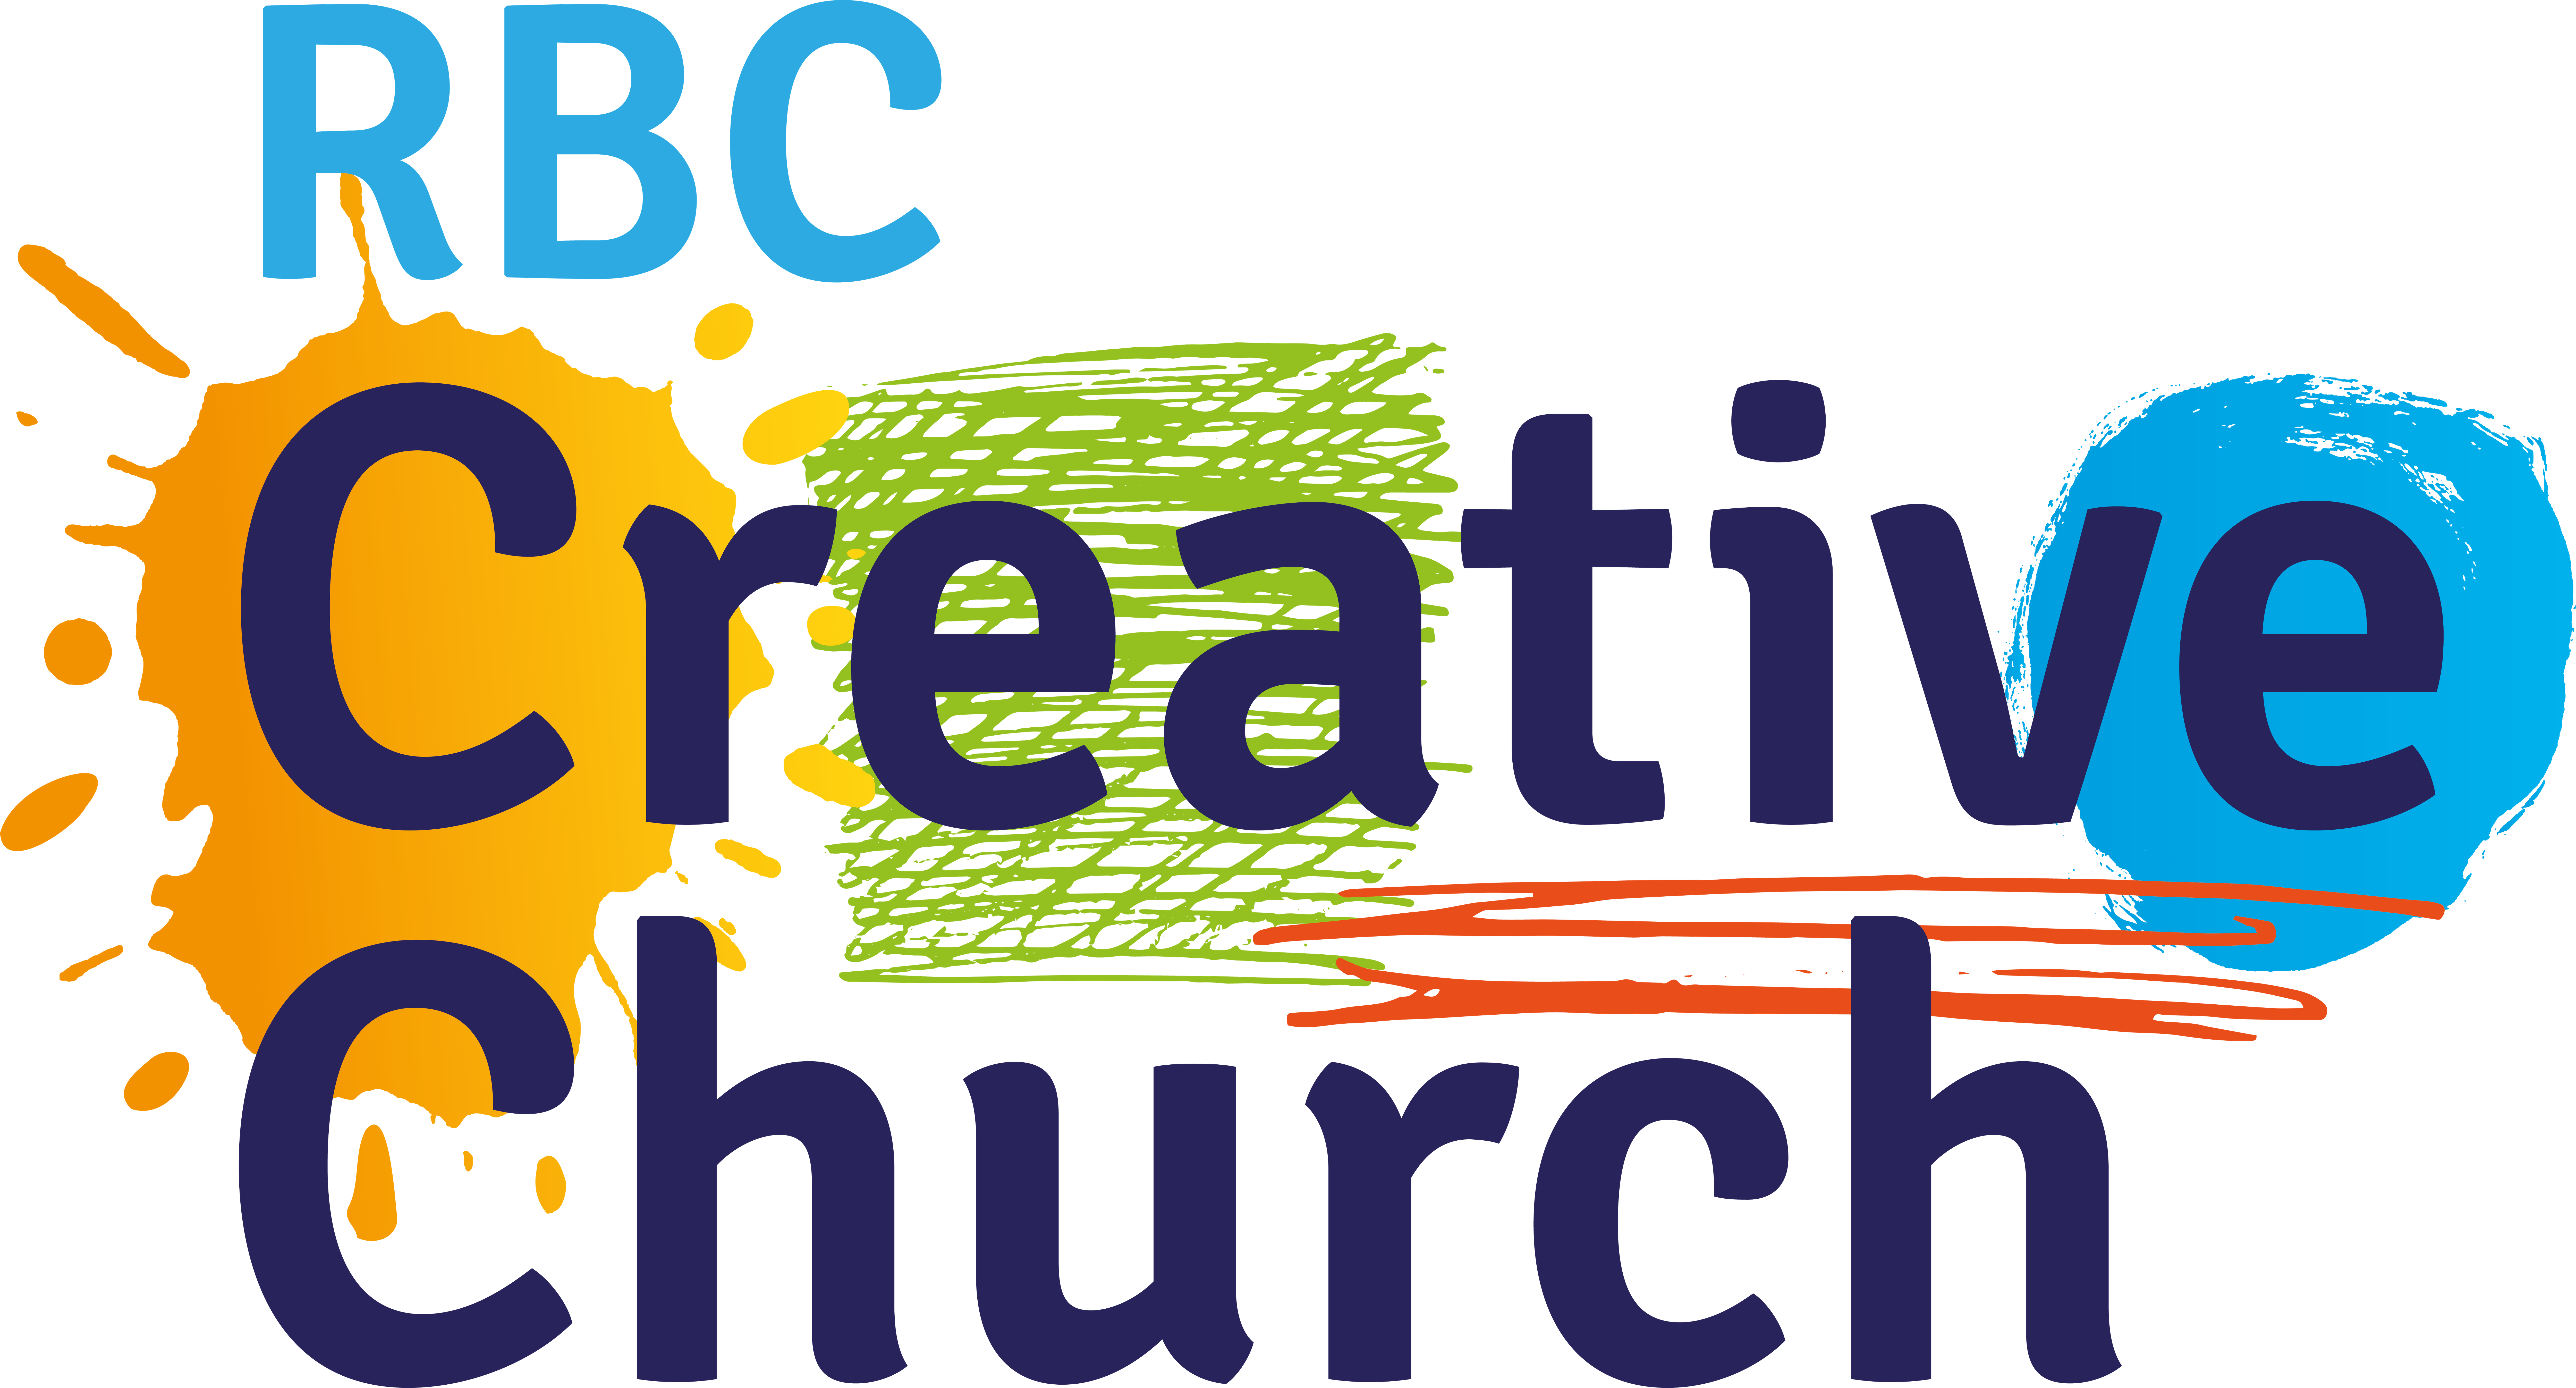 RBC Creative Church